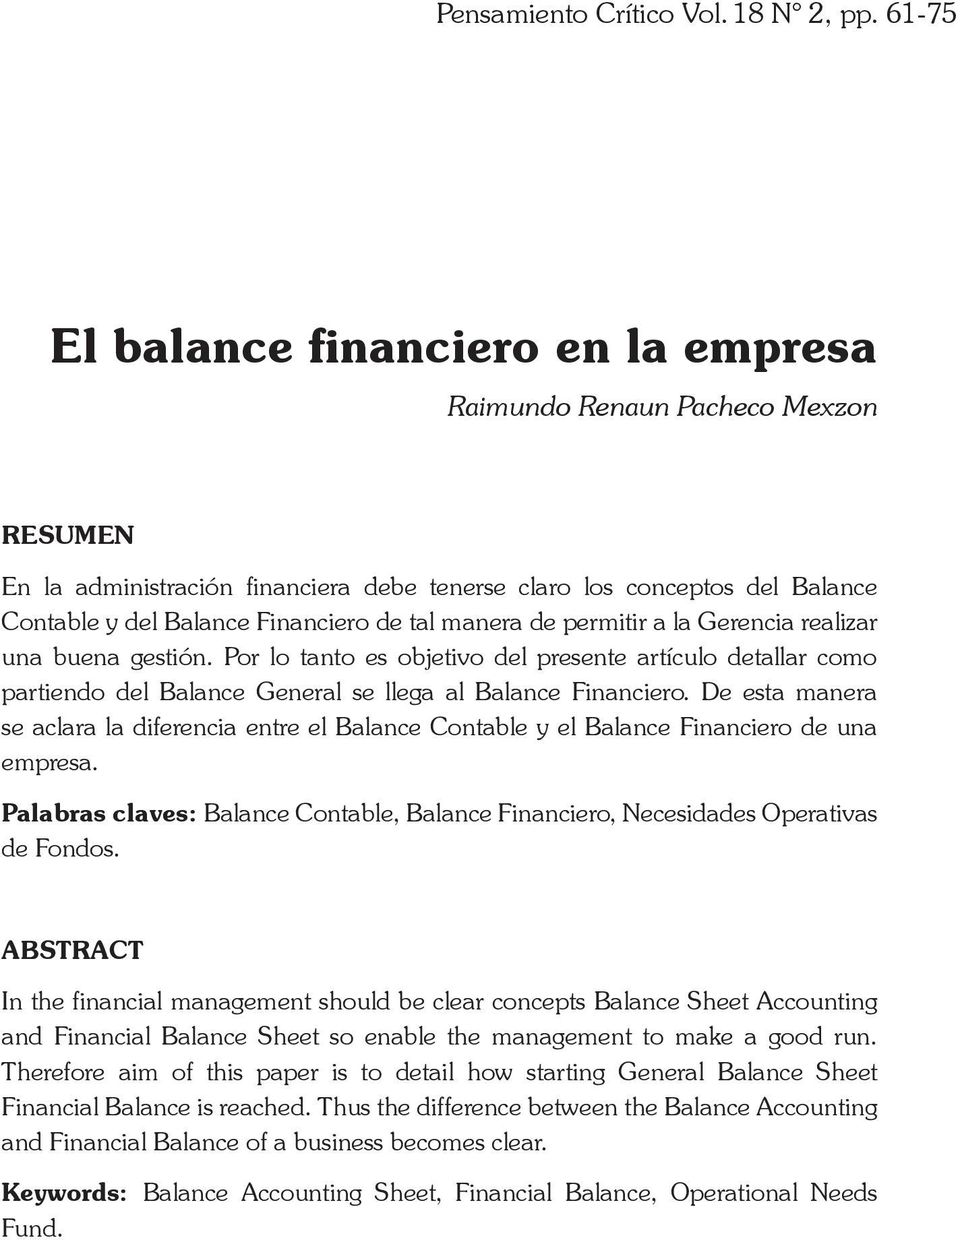 manera de permitir a la Gerencia realizar una buena gestión. Por lo tanto es objetivo del presente artículo detallar como partiendo del Balance General se llega al Balance Financiero.